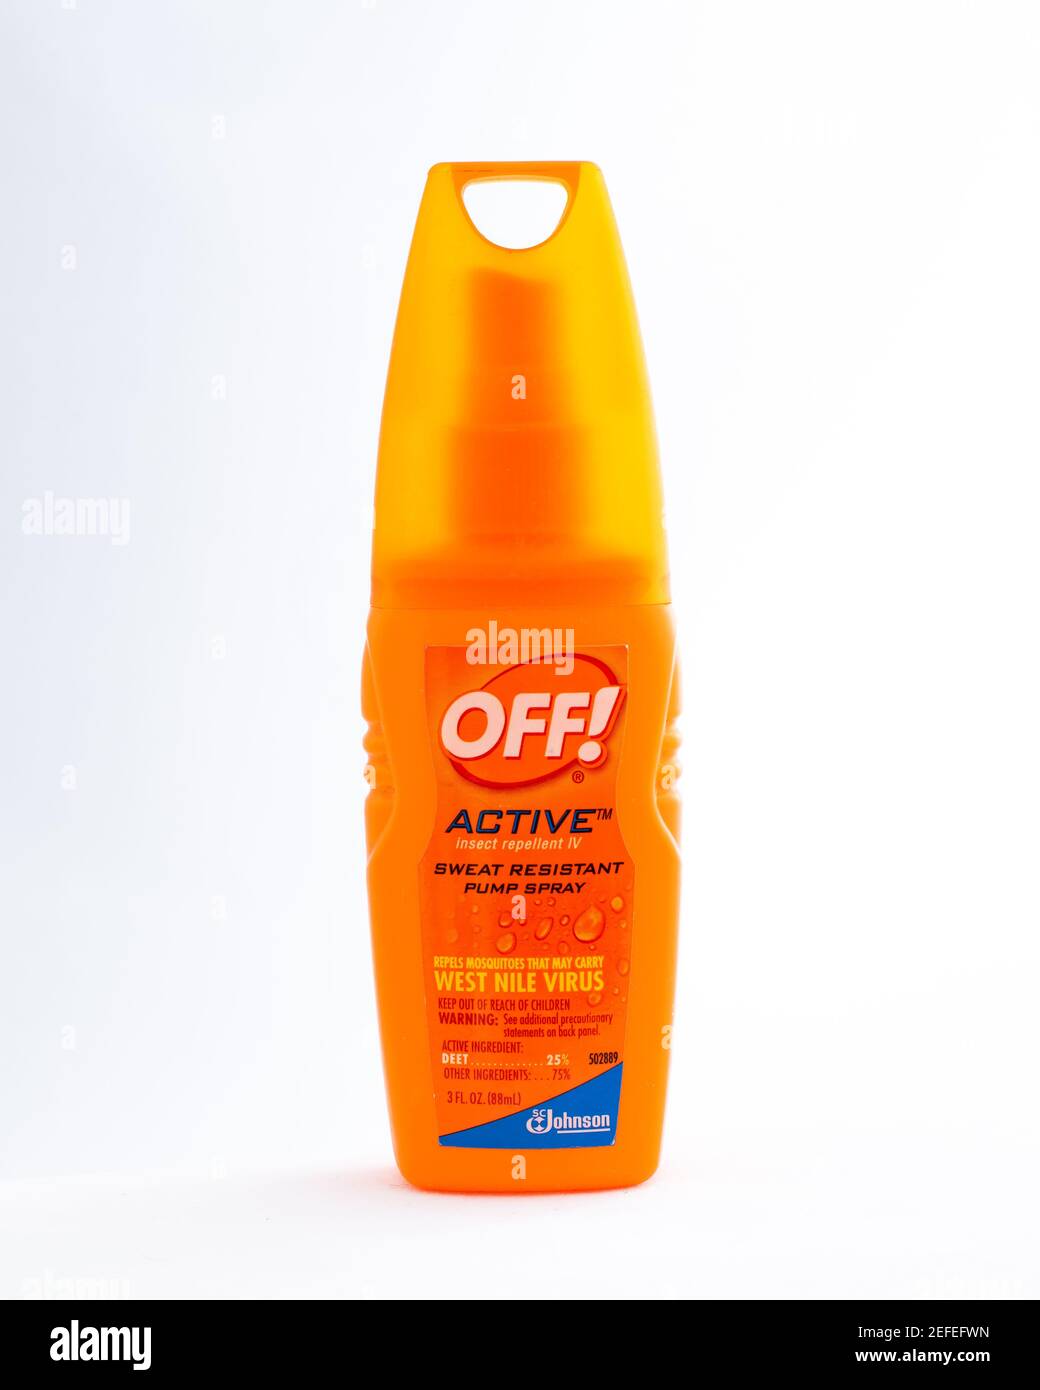 Un vaporisateur en plastique orange de Johnson Off!, un insectifuge  résistant à la transpiration actif pour repousser les moustiques et autres  punaises Photo Stock - Alamy